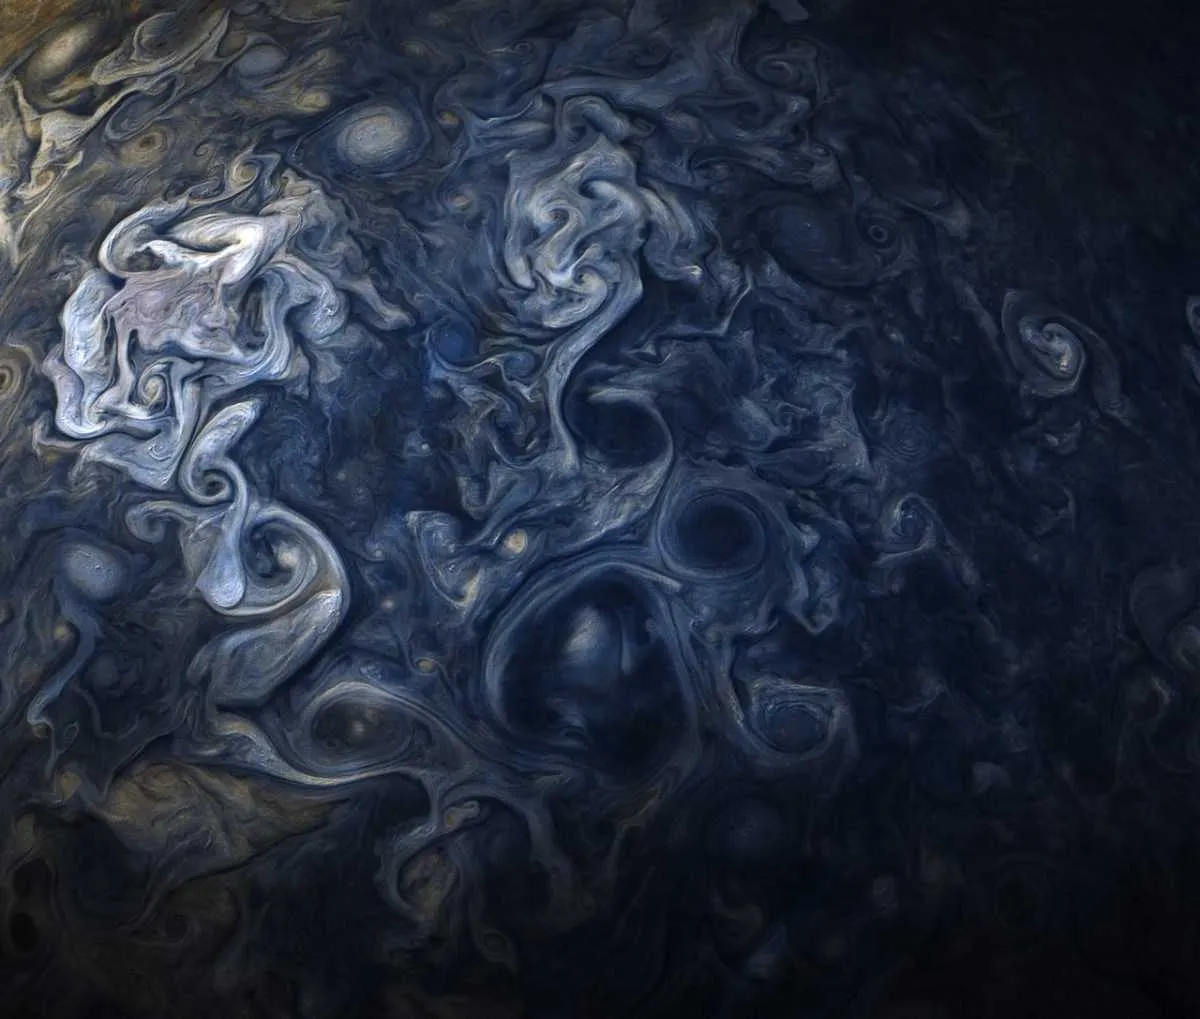 Jupiter in blue © NASA/JPL-Caltech/SwRI/MSSS/Gerald Eichstadt/Sean Doran